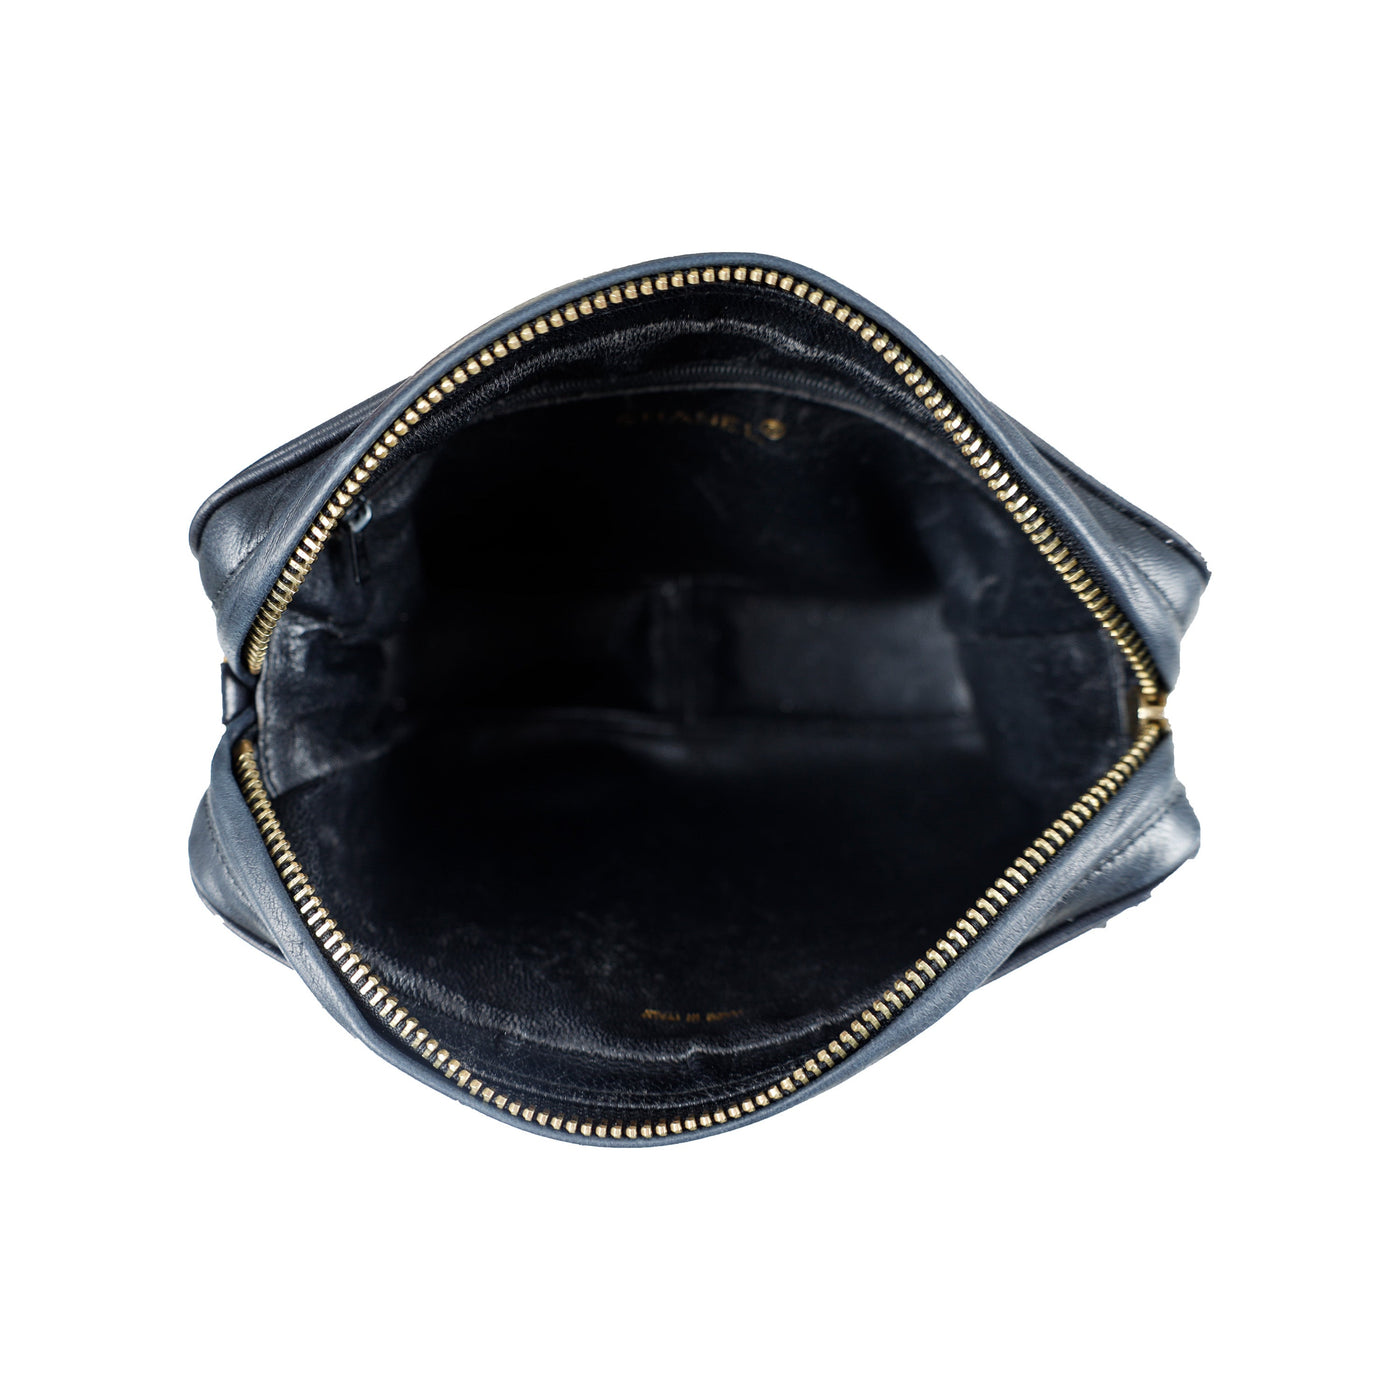 Secondhand Chanel Vintage CC Tassel Camera Bag